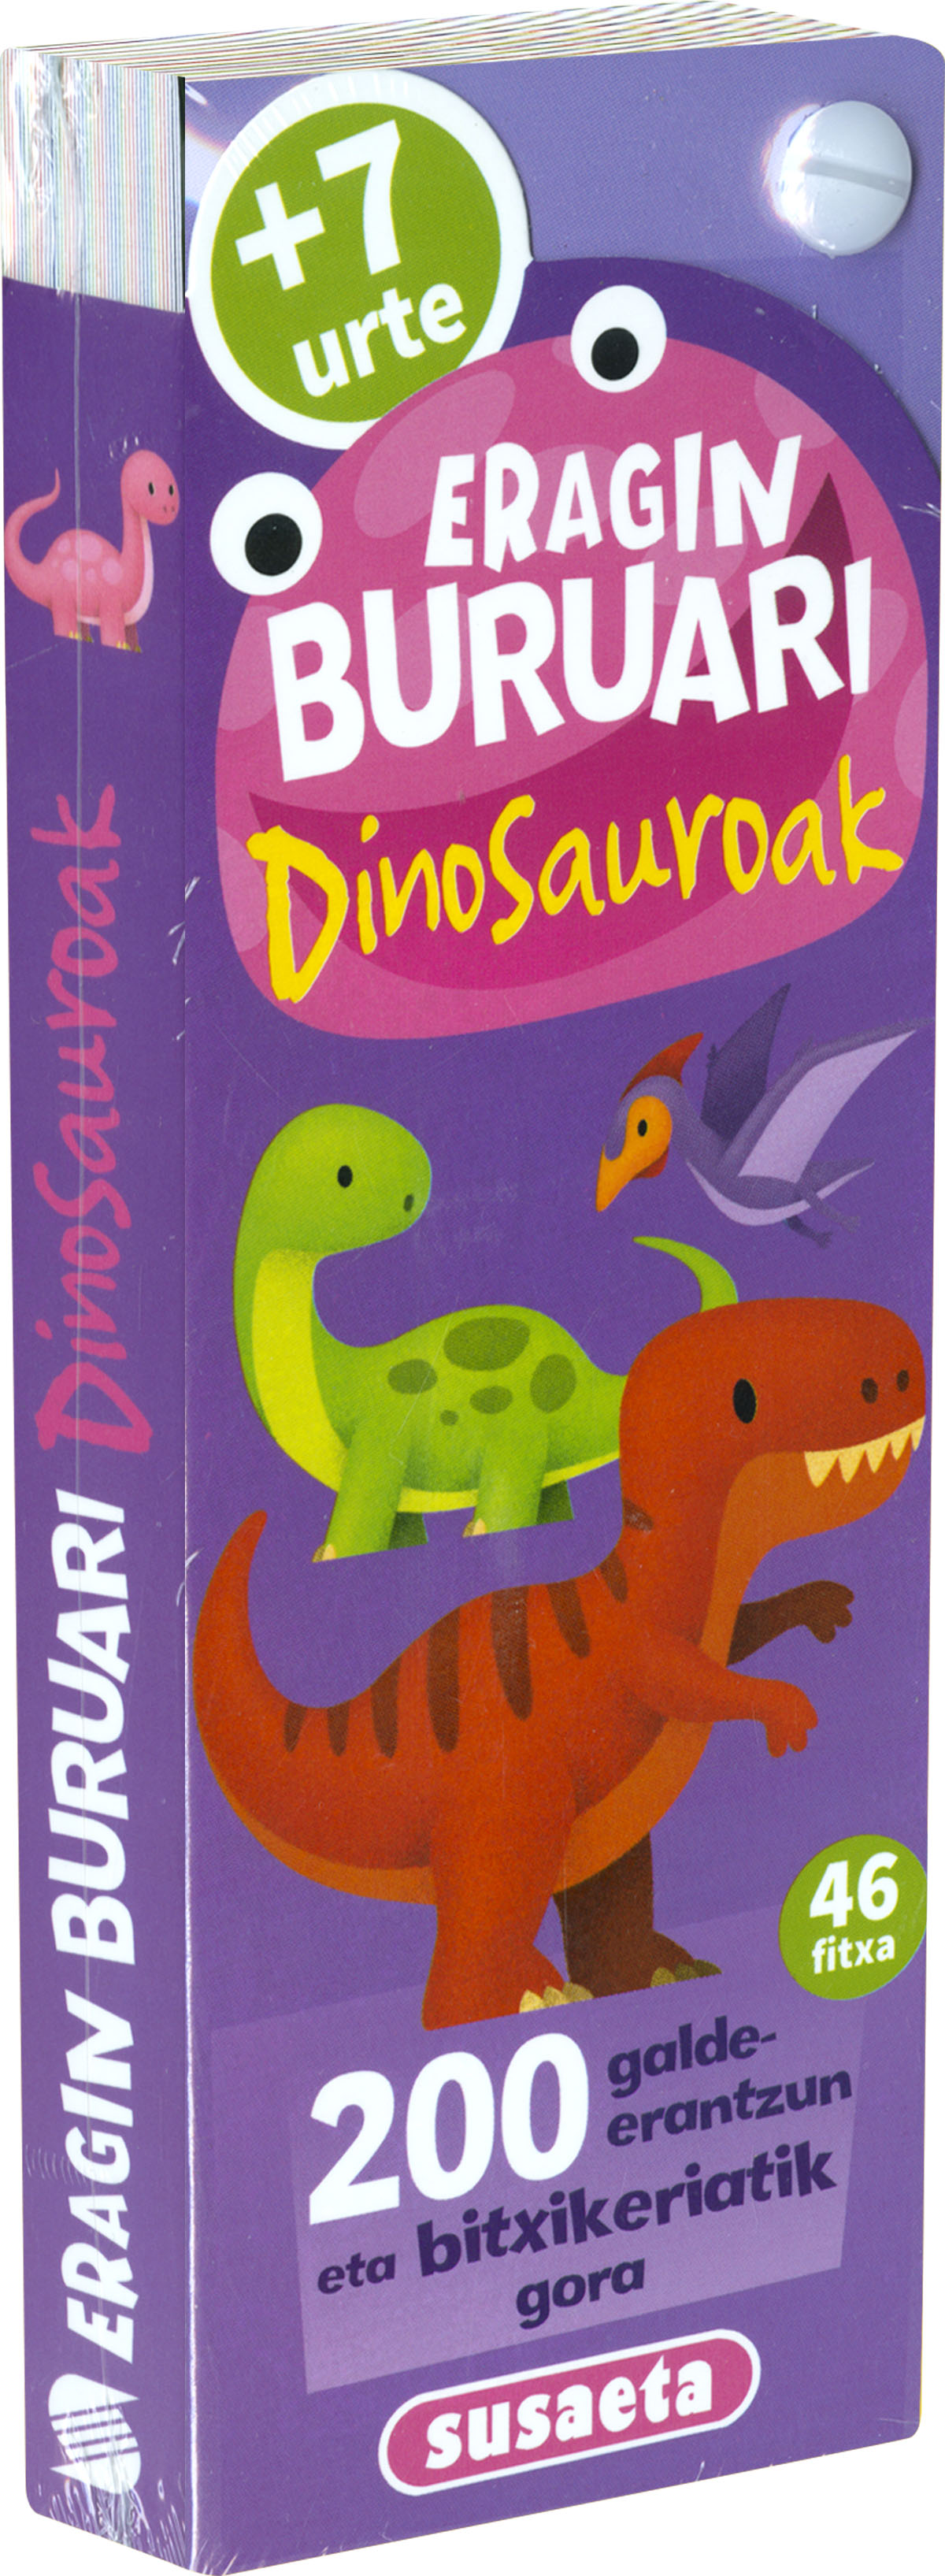 Dinosauroak + 7 urte